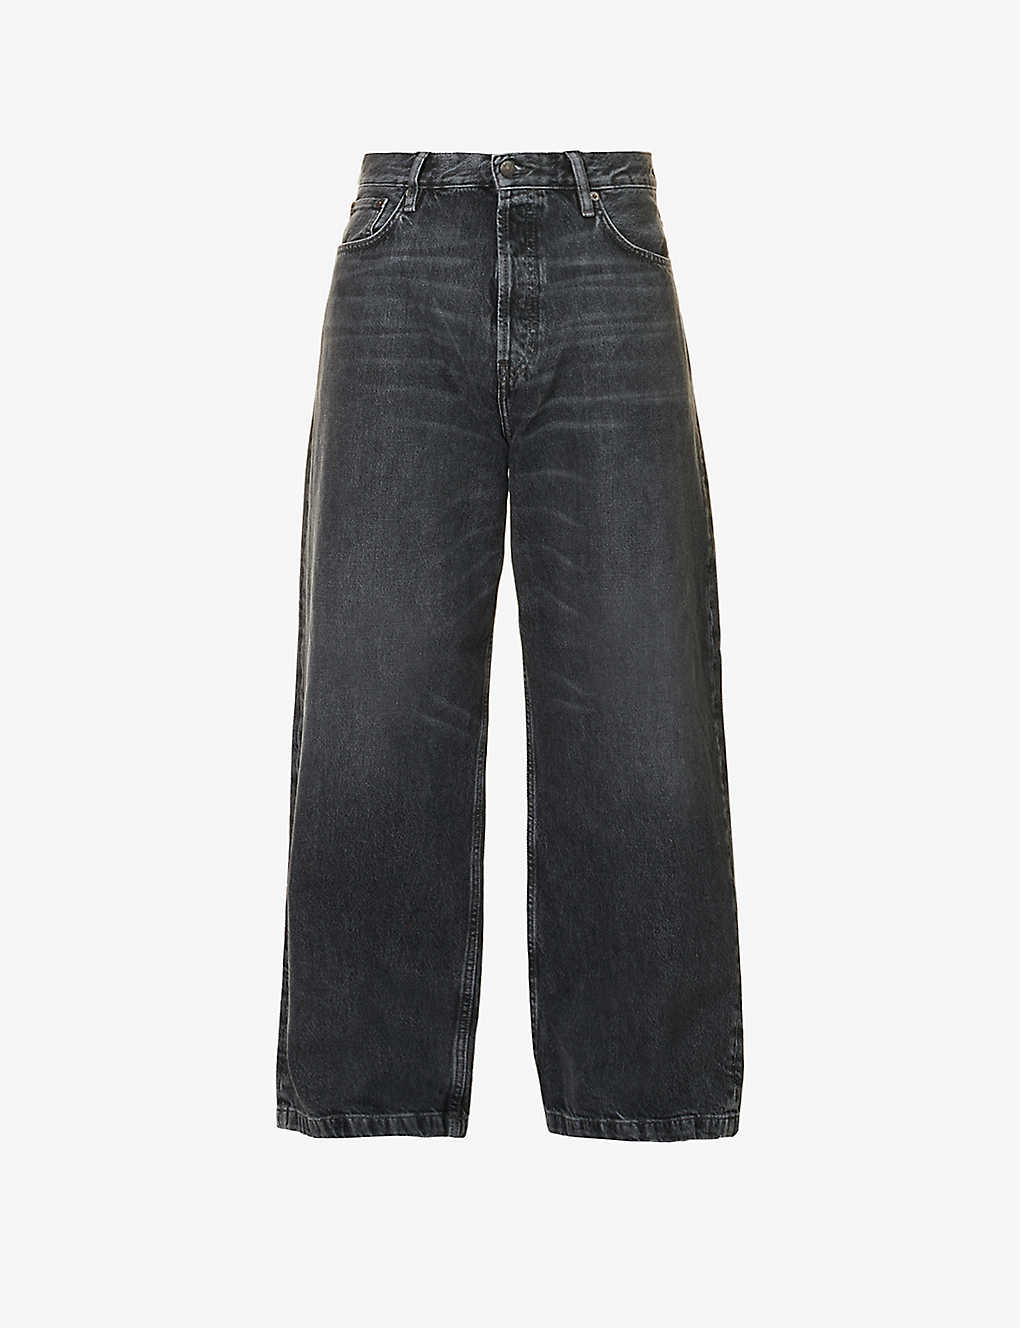 ACNE STUDIOS - 1989 wide-leg relaxed-fit denim jeans | Selfridges.com